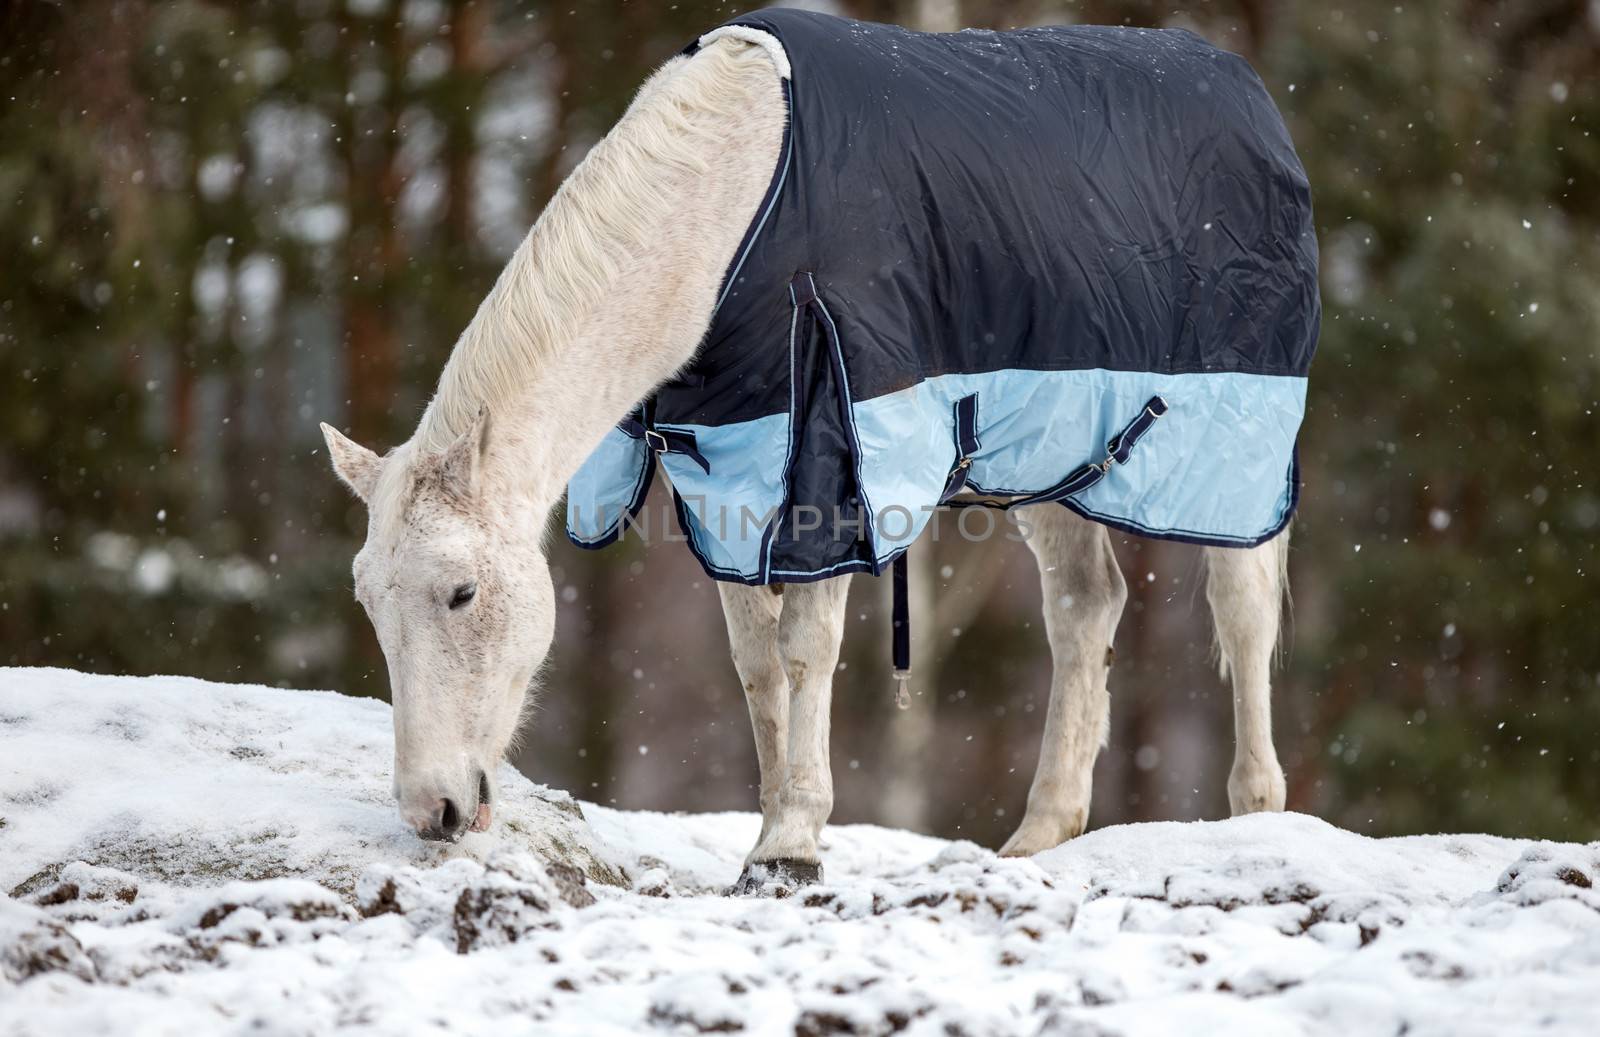 White Horse in blanket